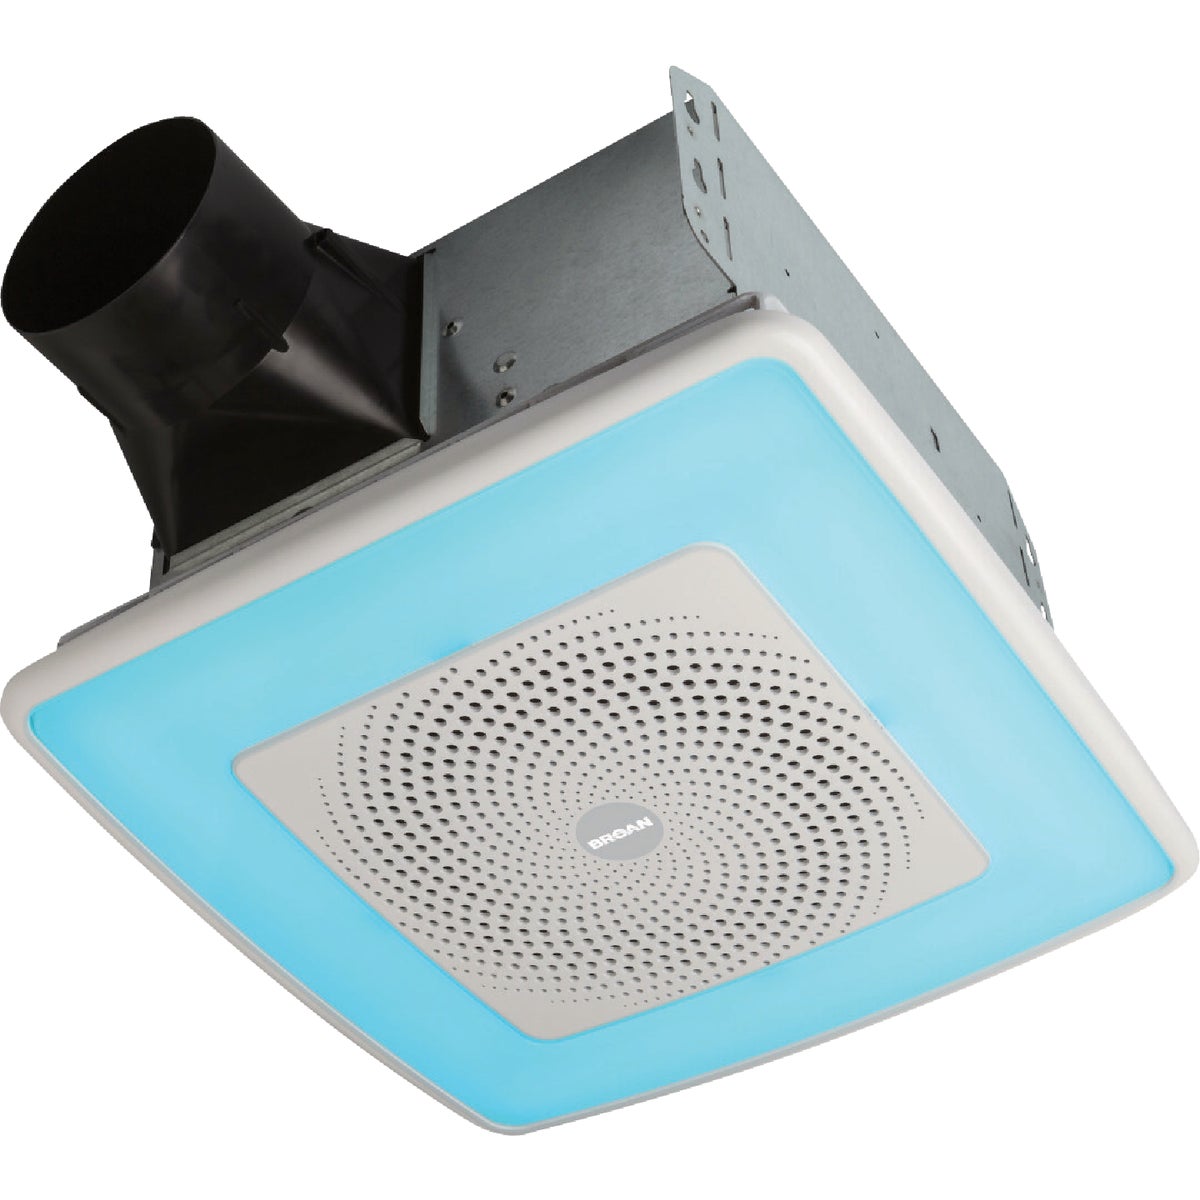 Broan ChromaComfort 110 CFM 1.5 Sones 120V Bath Exhaust Fan with LED Light & Sensonic Bluetooth Speaker